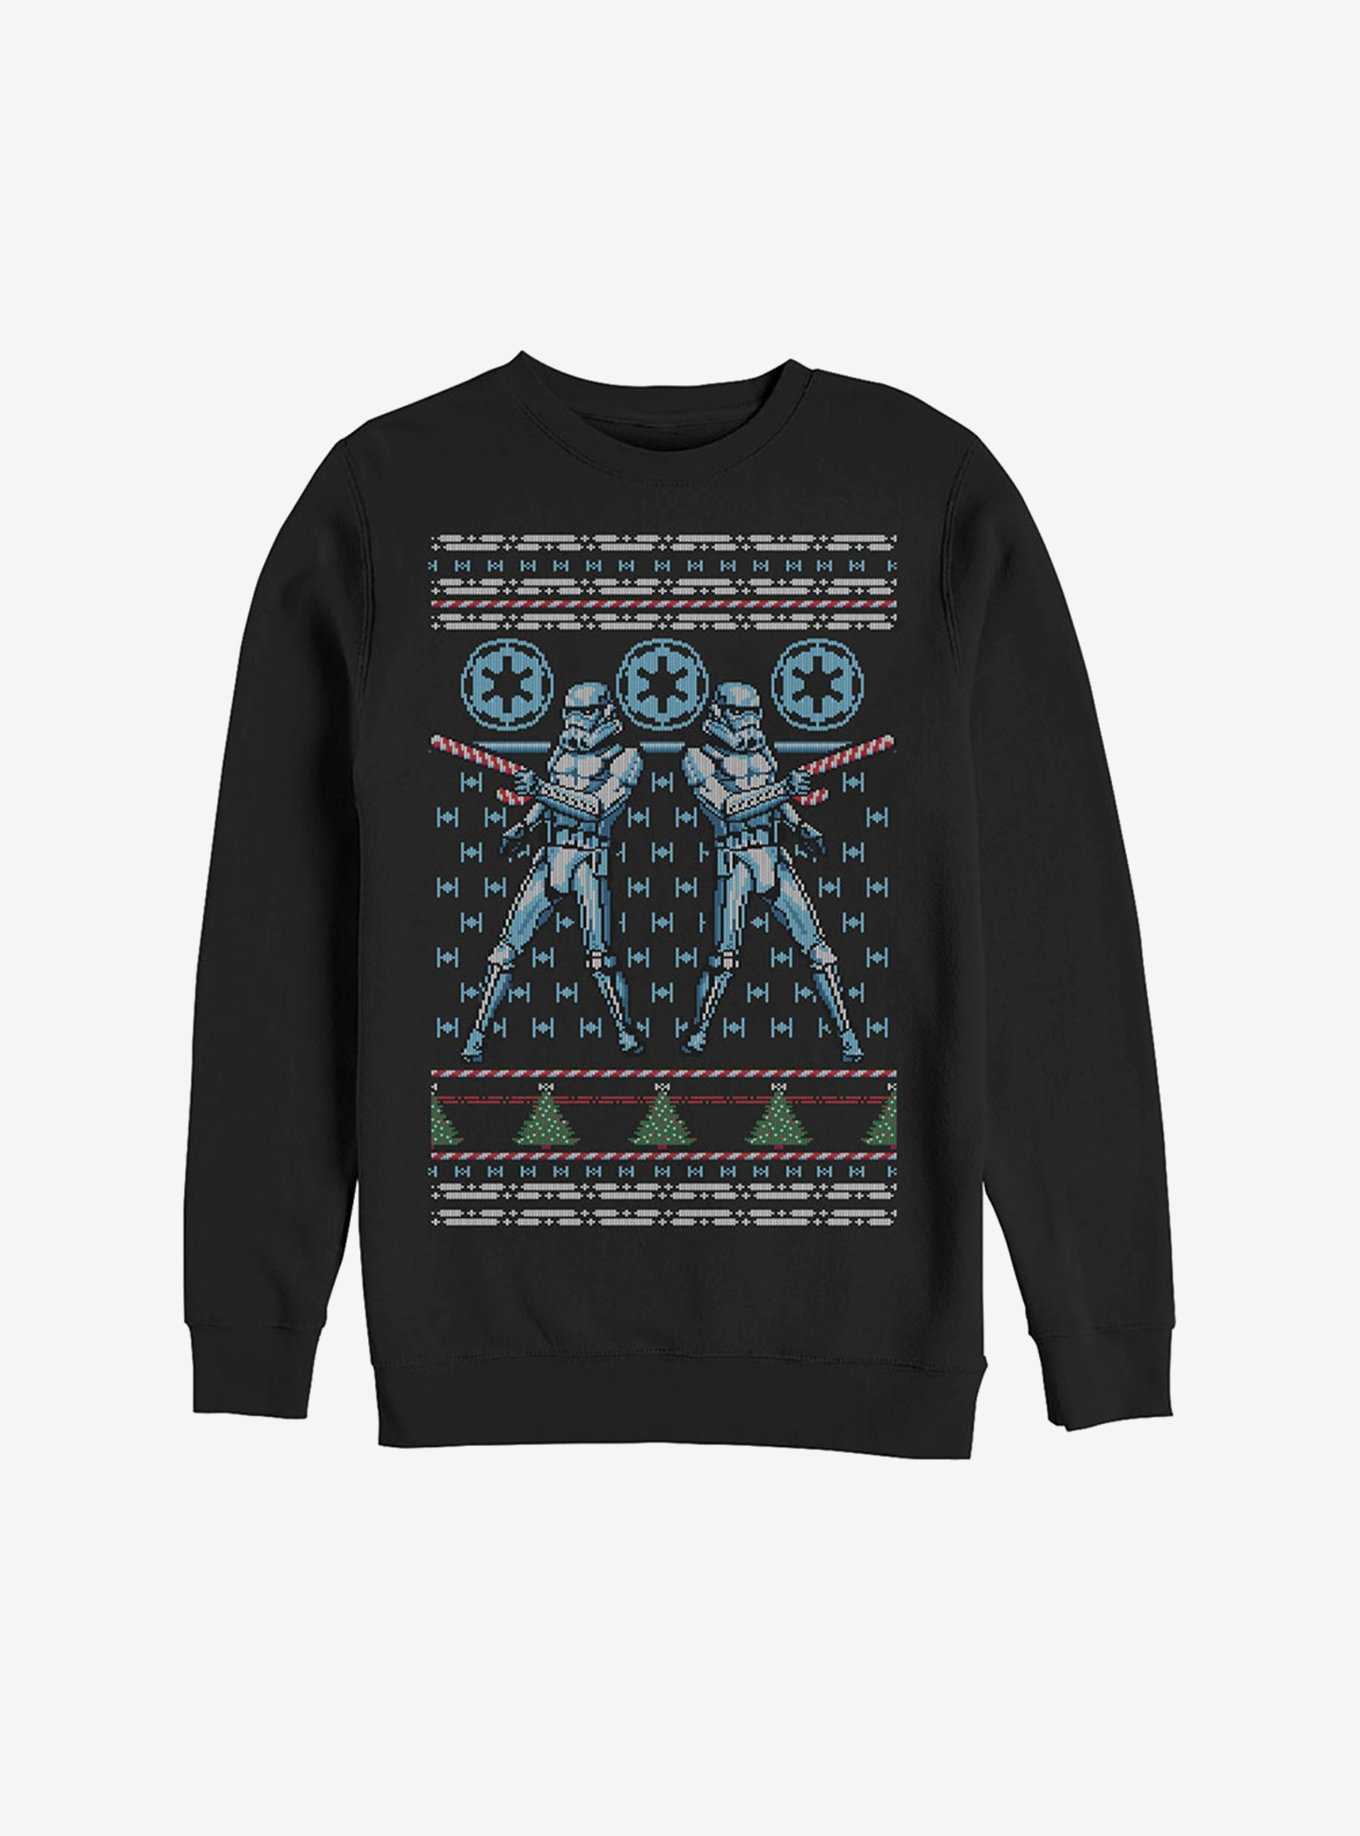 Star Wars Stormtrooper Christmas Pattern Sweatshirt, , hi-res